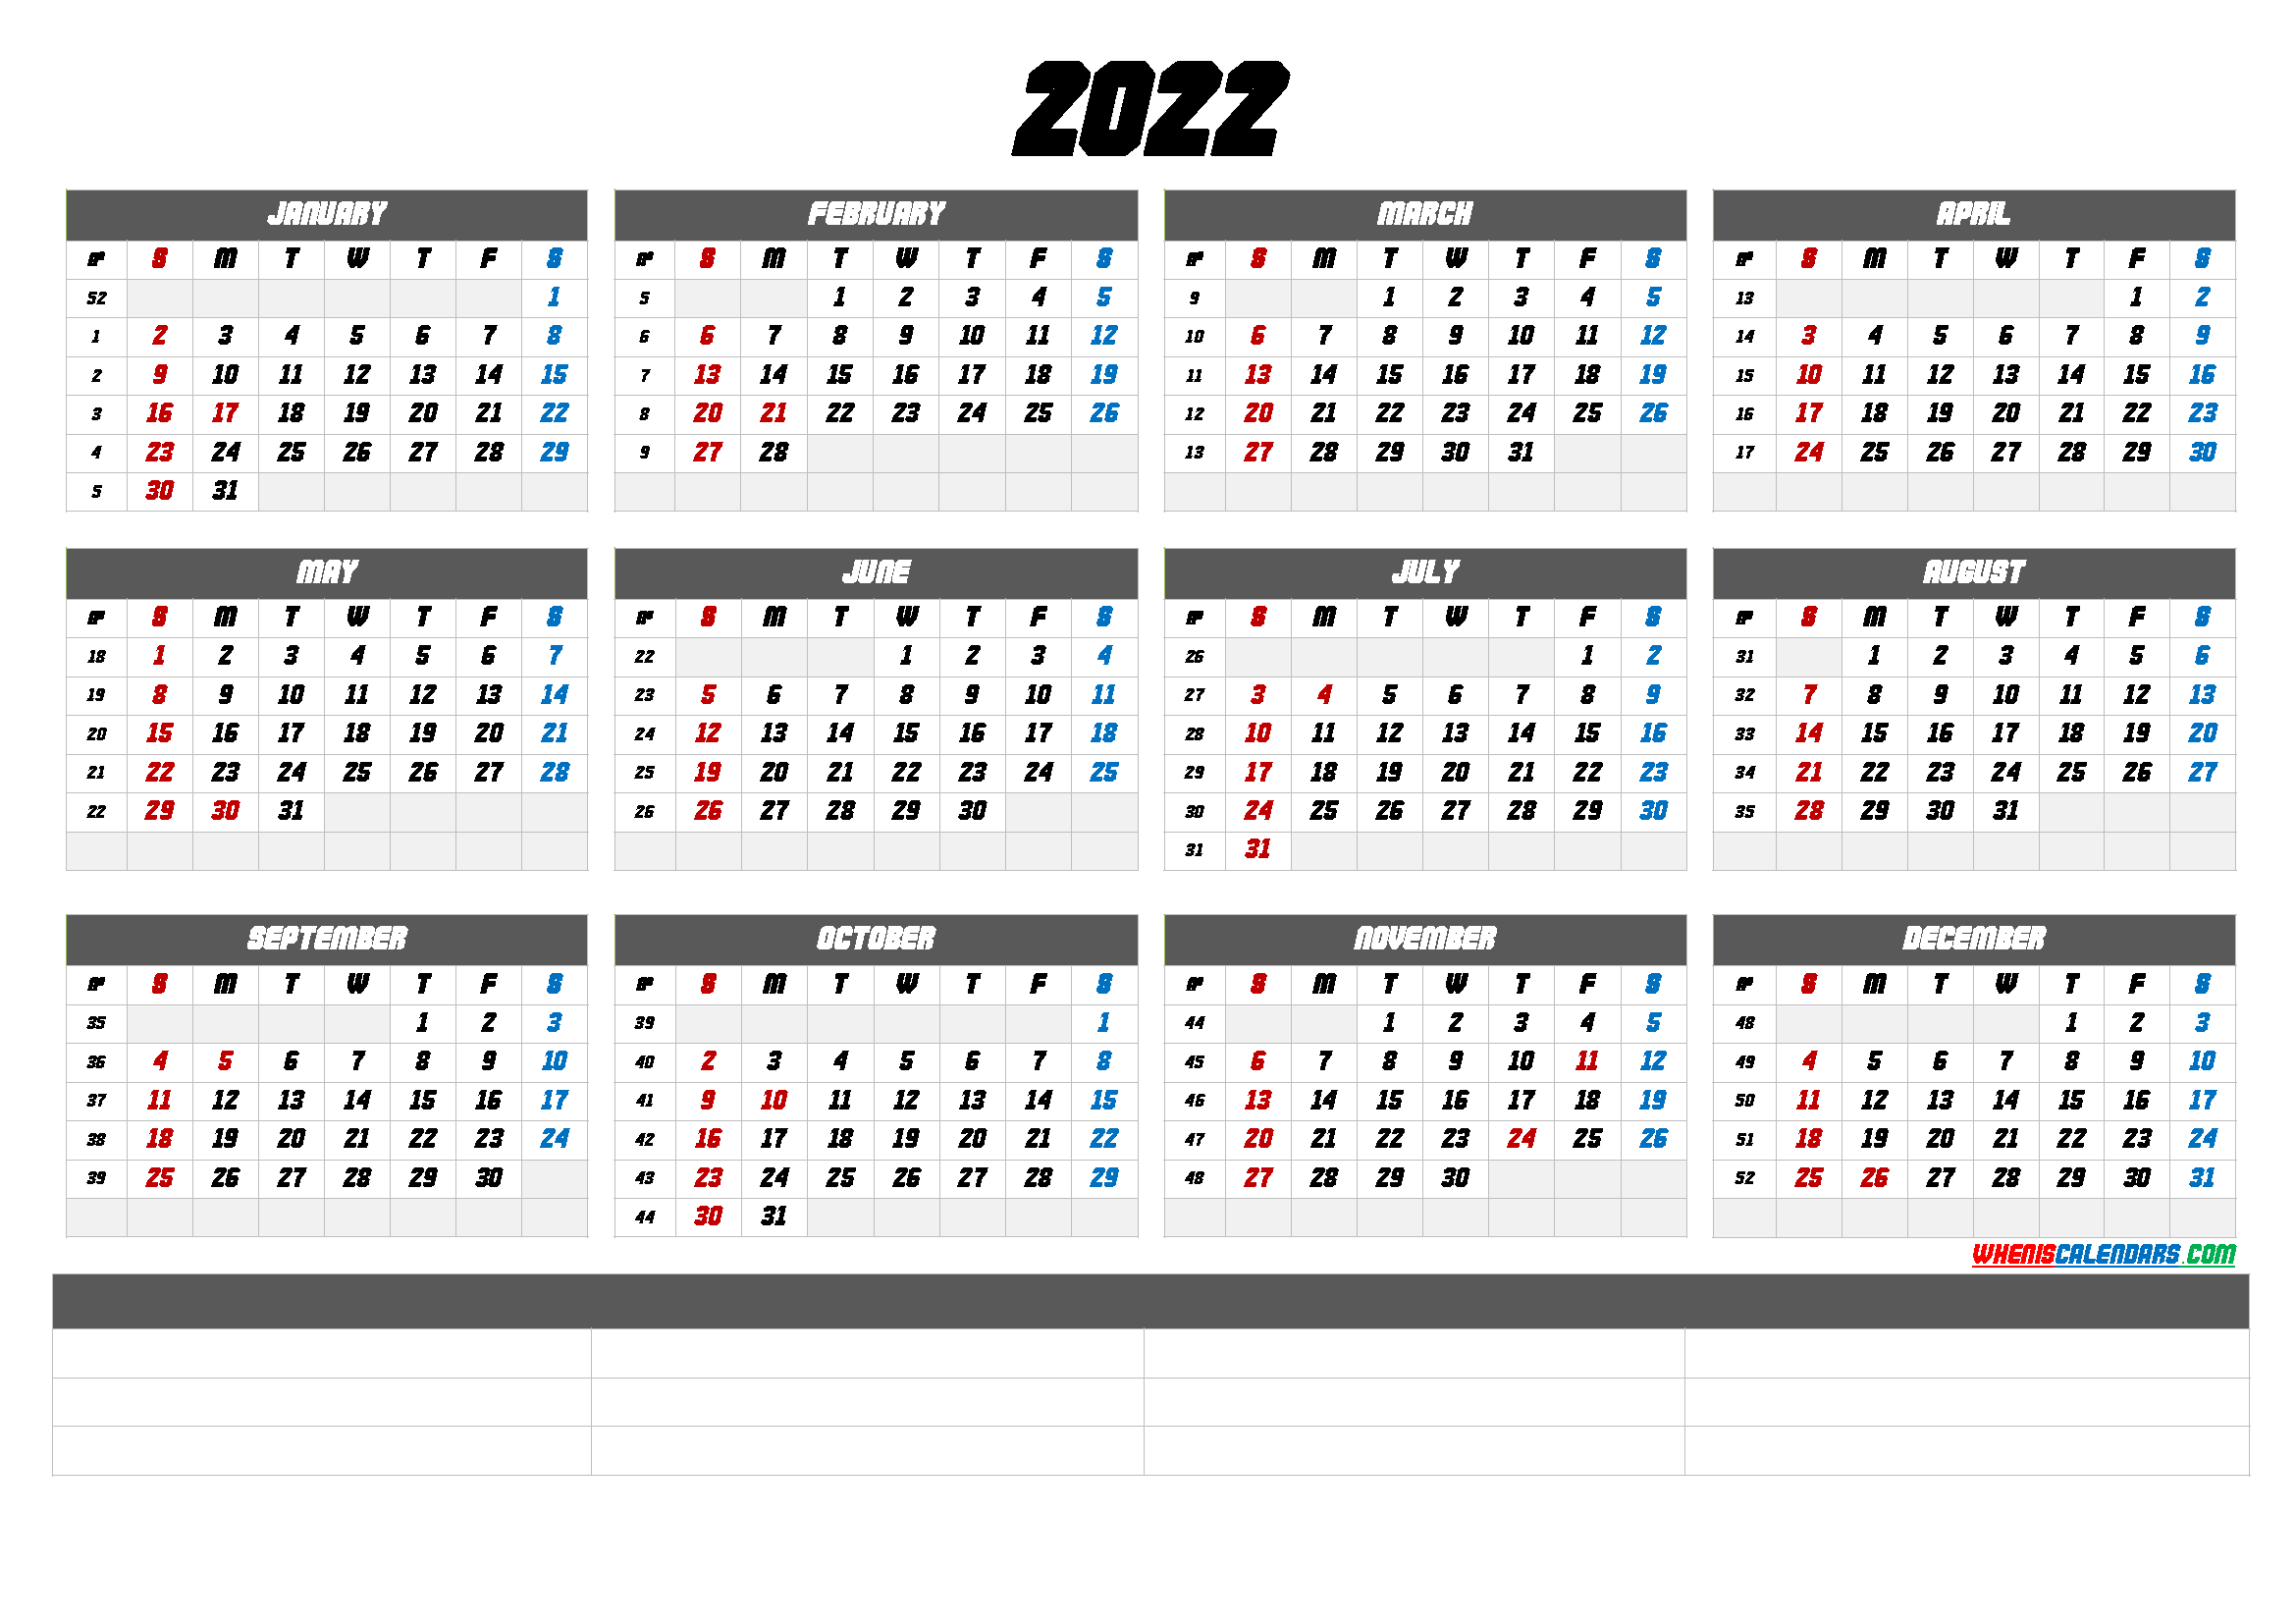 Free Calendar 2022 with Week Numbers